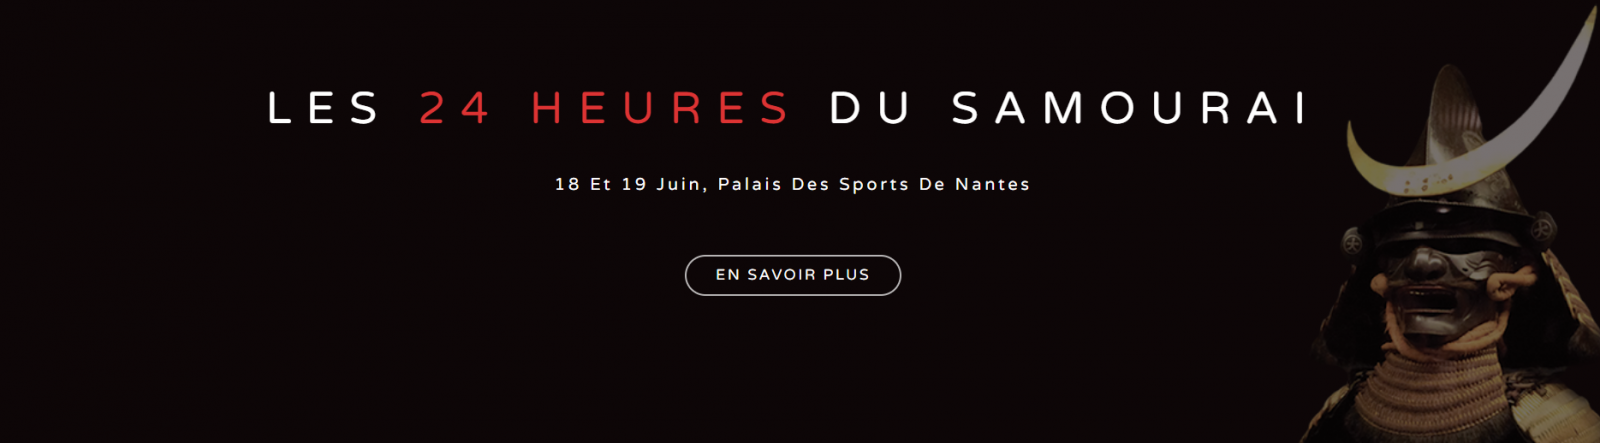 LES 24 HEURES DU SAMOURAI 18 et 19 Juin au Palais Des Sports De Nantes Inscription en ligne